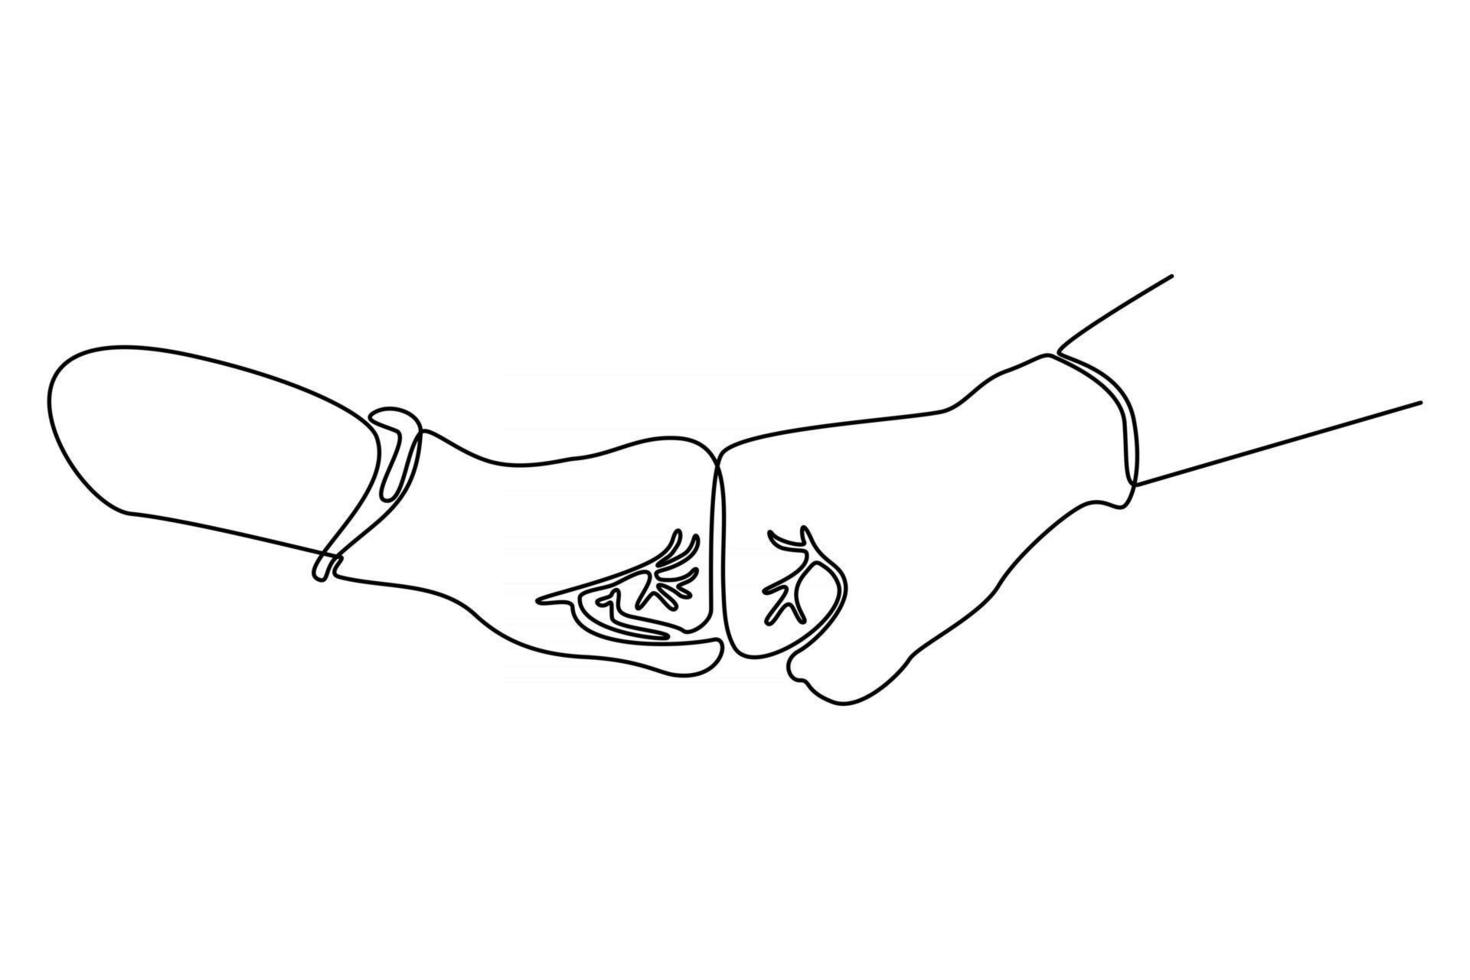 ilustração em vetor linha contínua de duas mãos com luvas protetoras de vírus corona